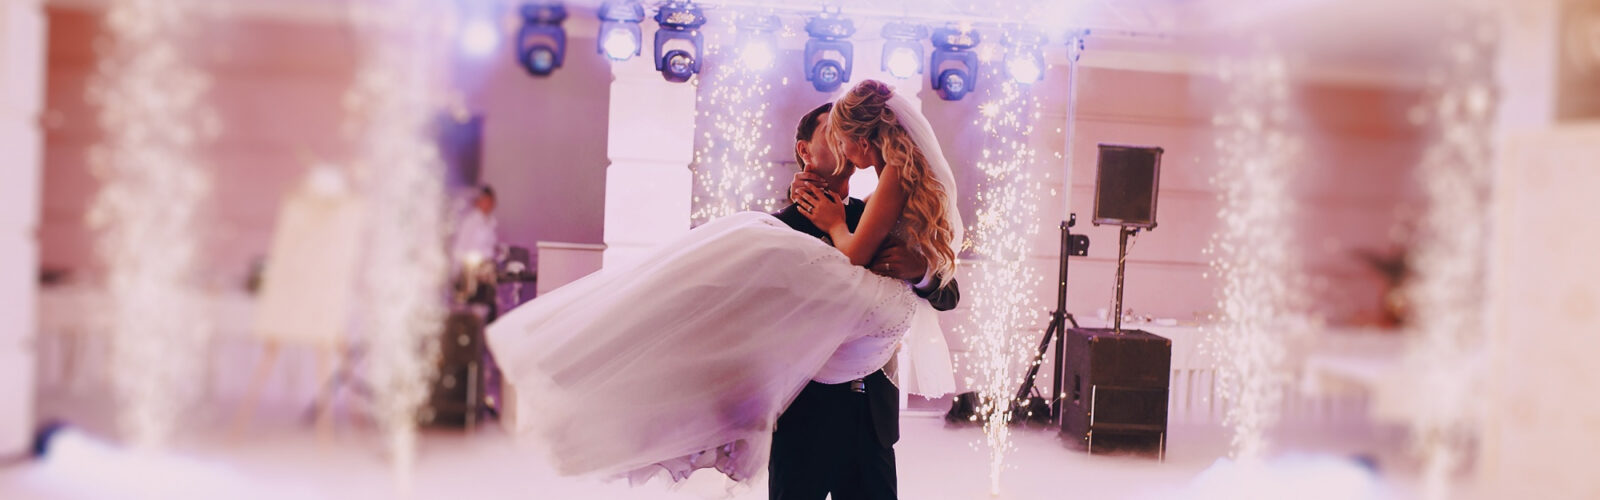 Junges glückliches Brautpaar beim Hochzeitstanz mit Konfetti und Lichteffekten